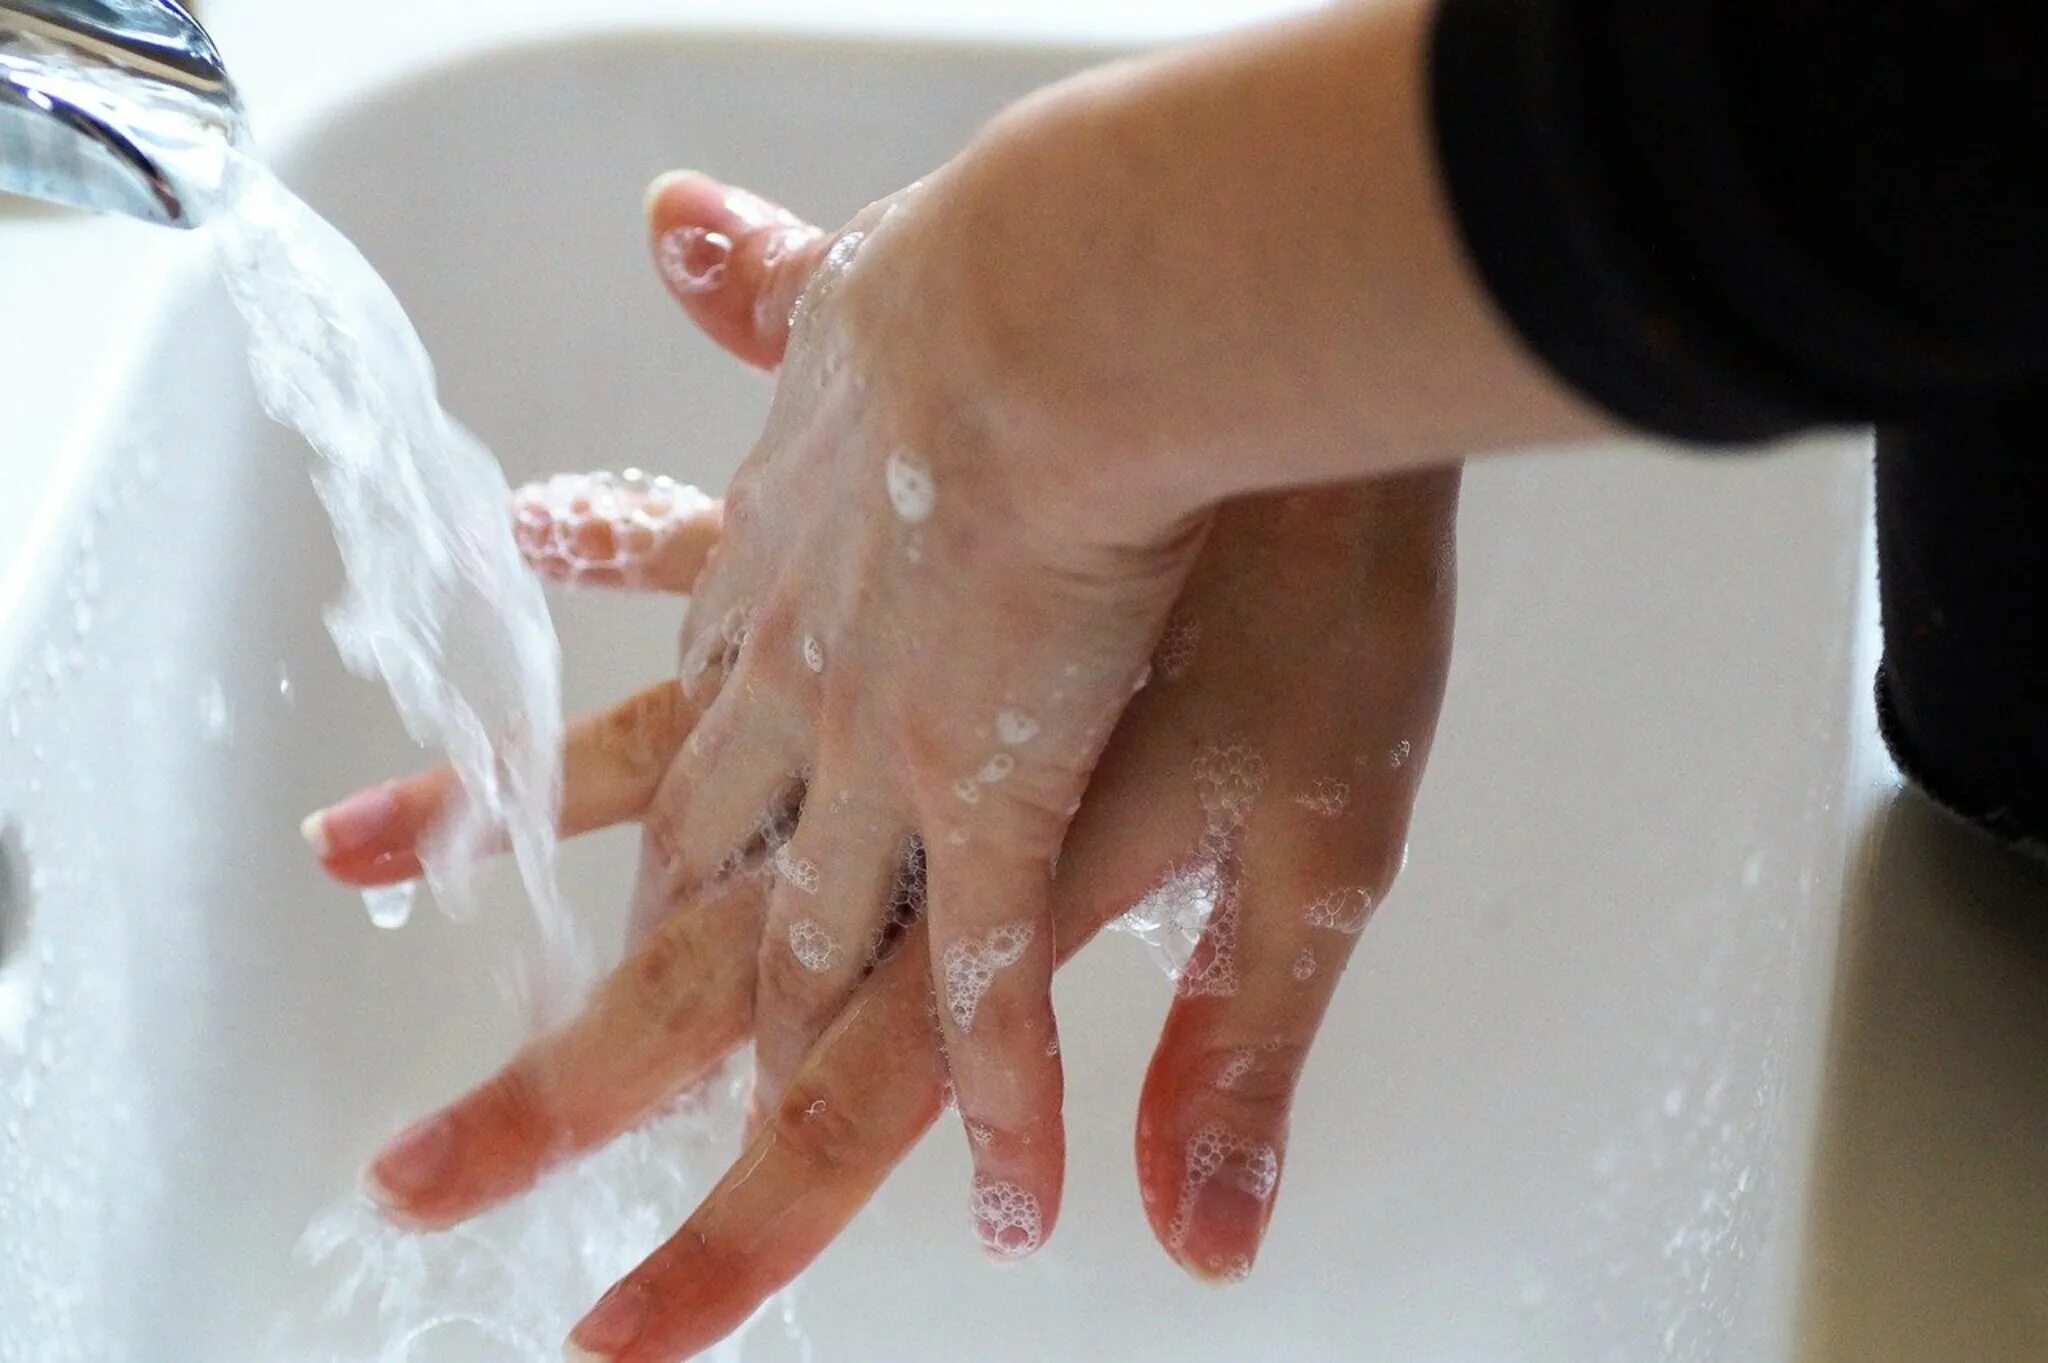 Гигиена мытья рук. Гигиена рук. Мытье рук. Вымойте руки с мылом. Мытье рук с мылом.